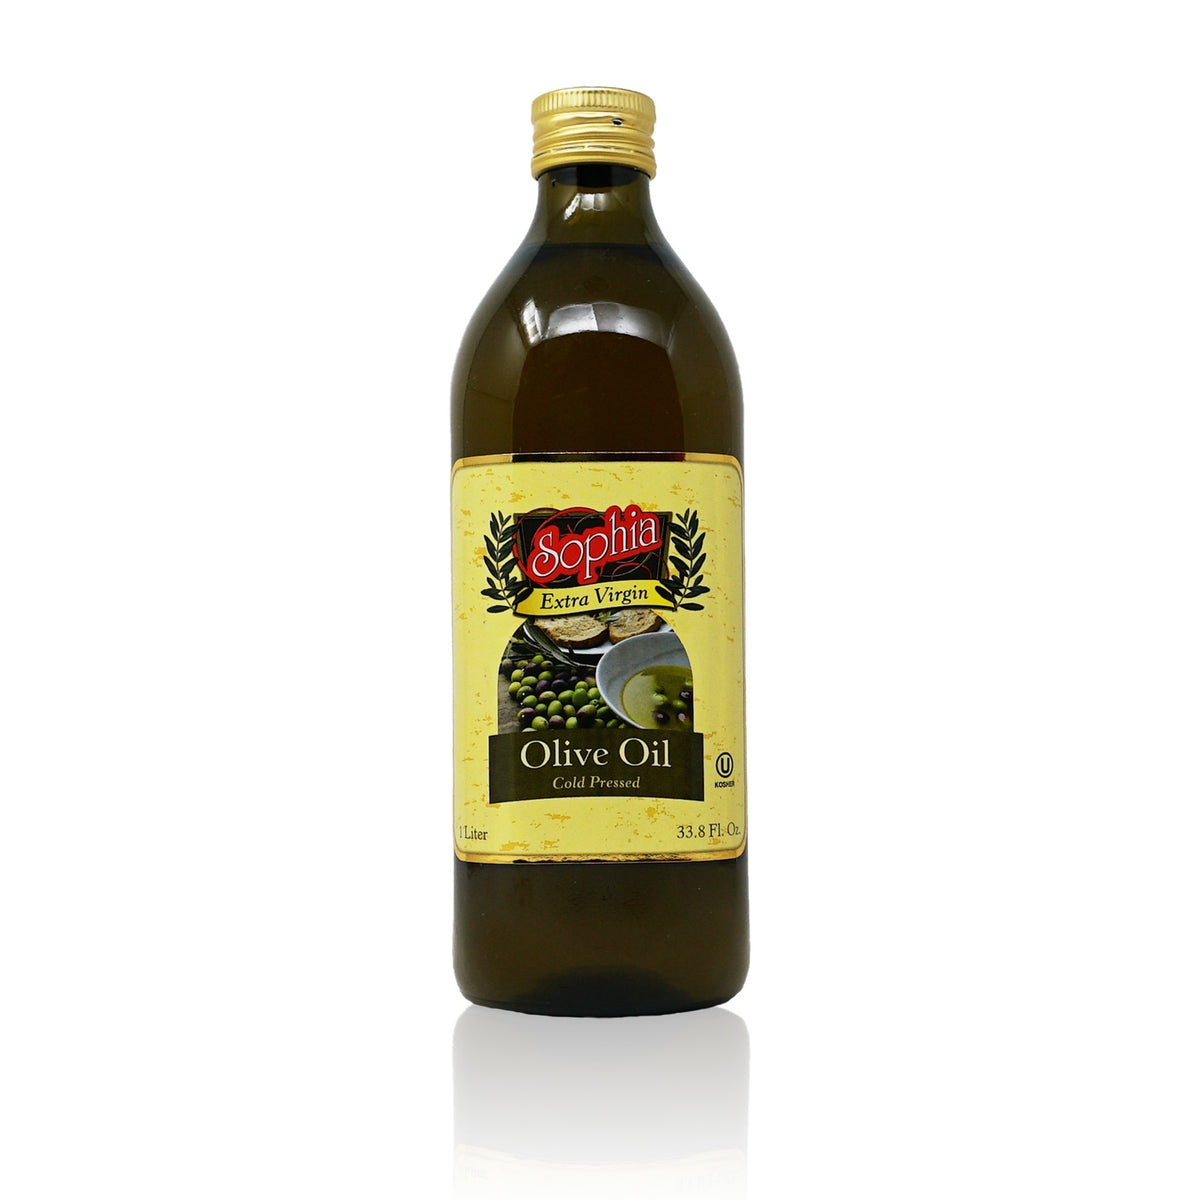 Sophia Oil - Extra Virgin Olive Oil